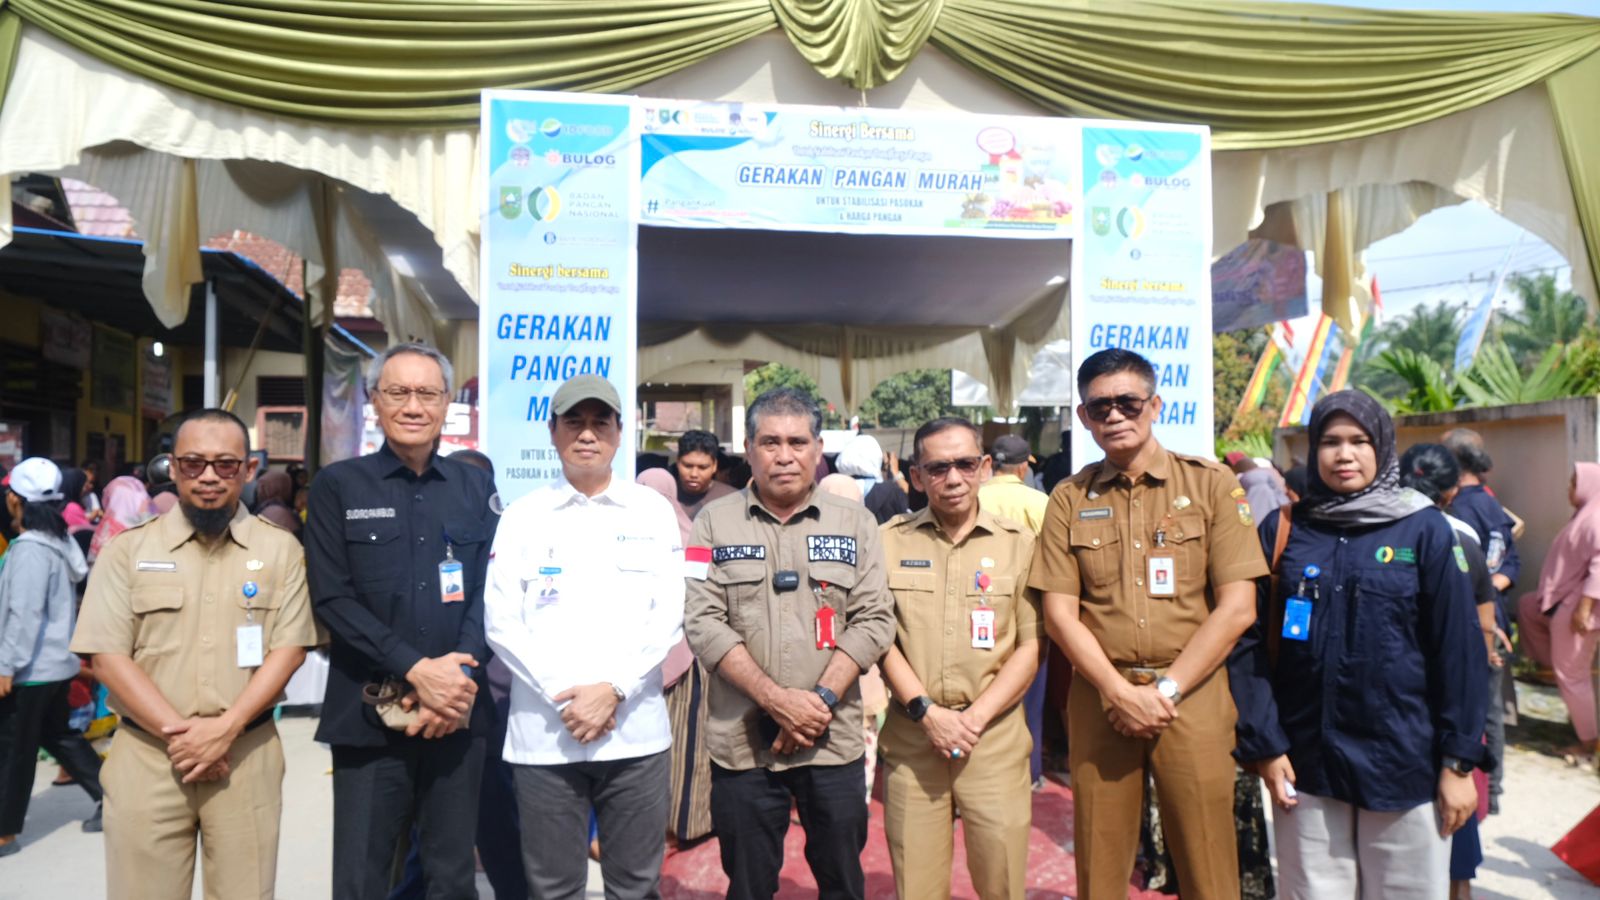 Pemkab Kampar Bersama Pemprov Riau Launching Gerakan Pangan Murah Di Desa Karya Indah